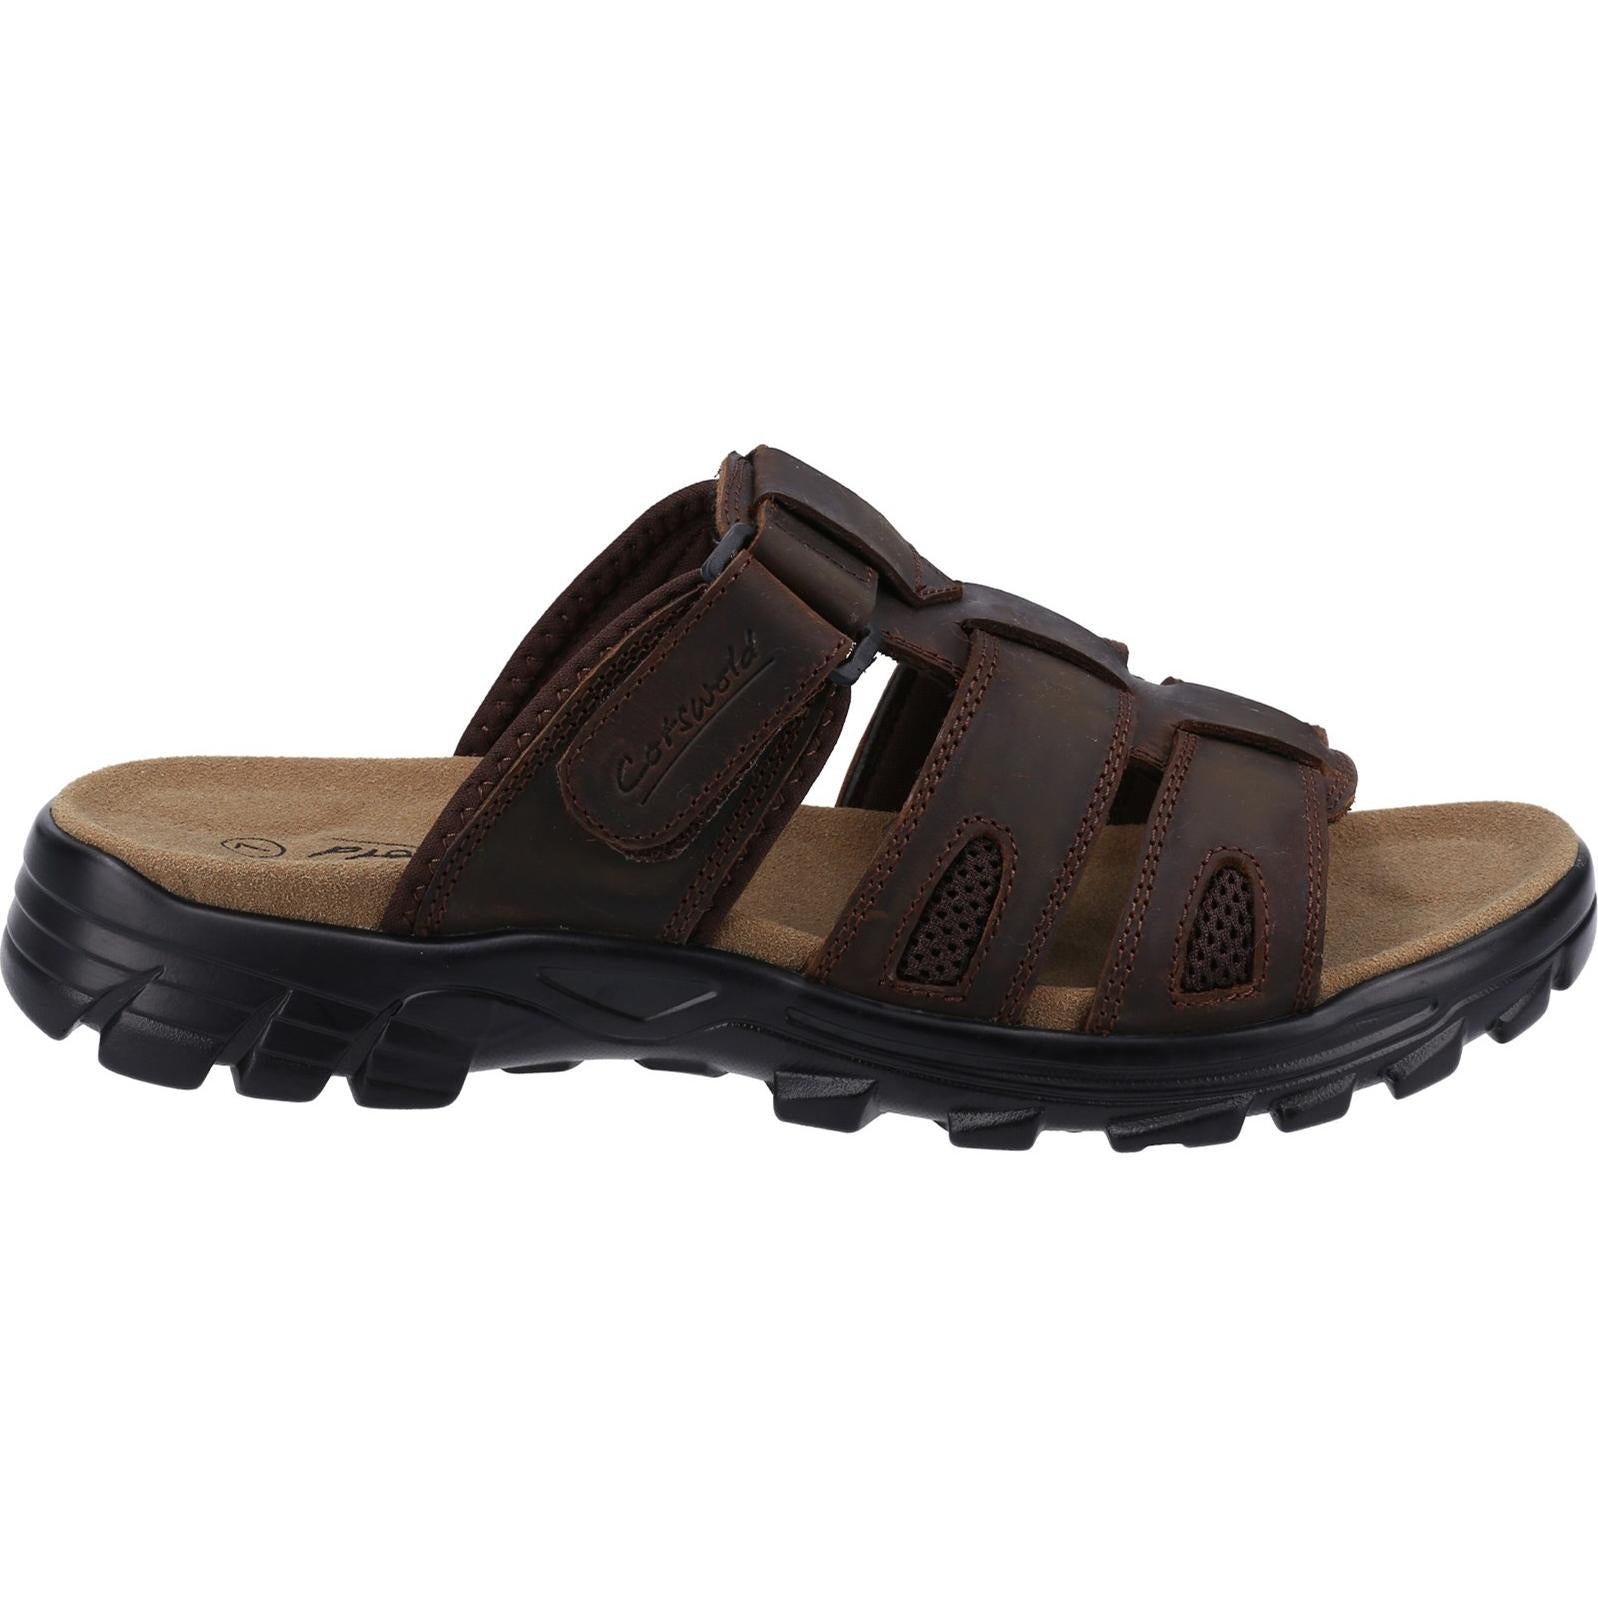 Cotswold Tayton Leather Walking Slider Sandals